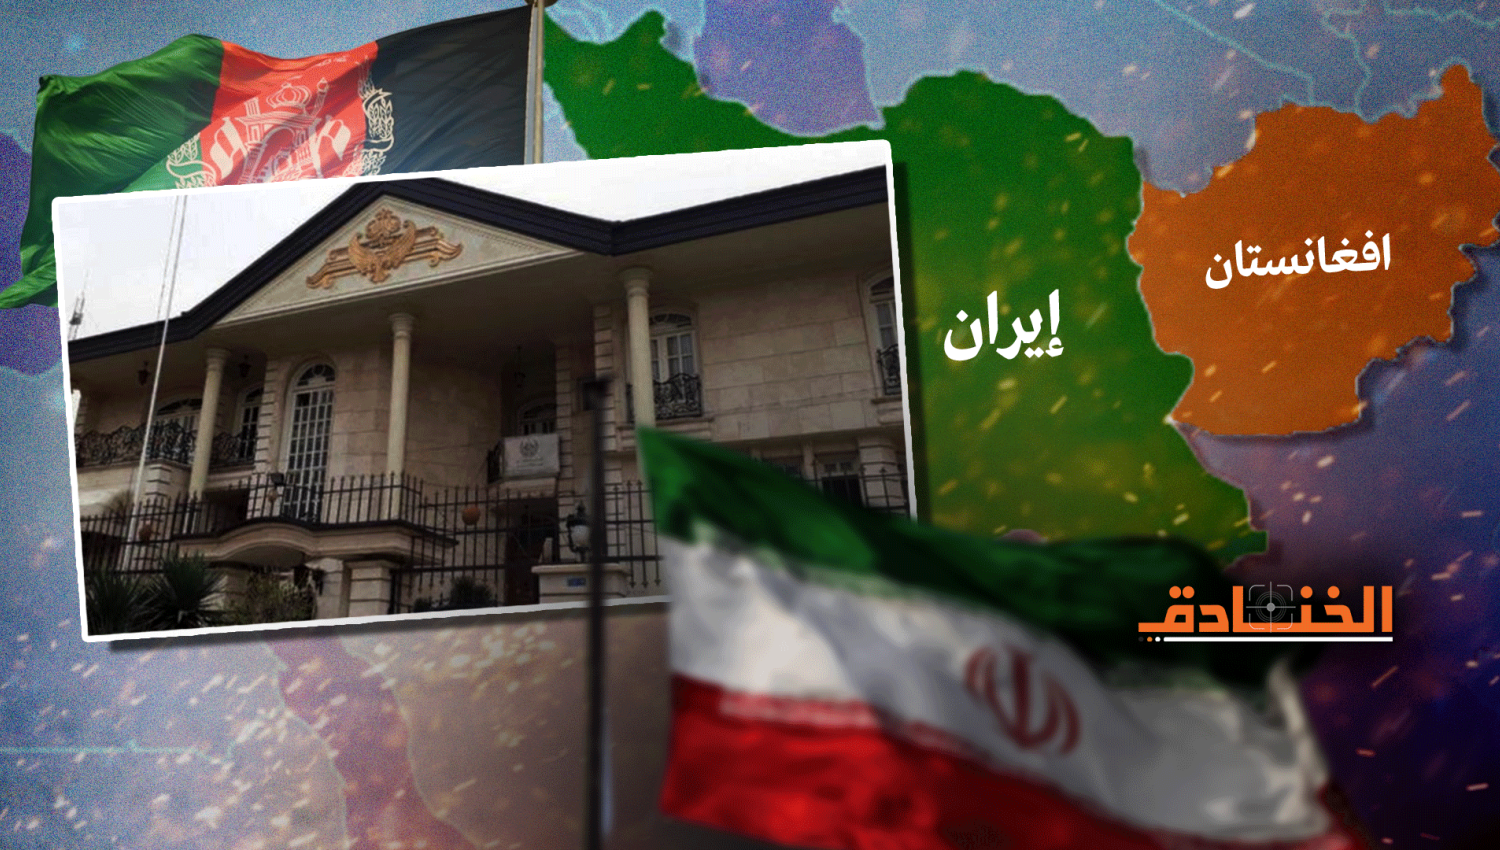 إيران وطالبان: تهديدات مشتركة